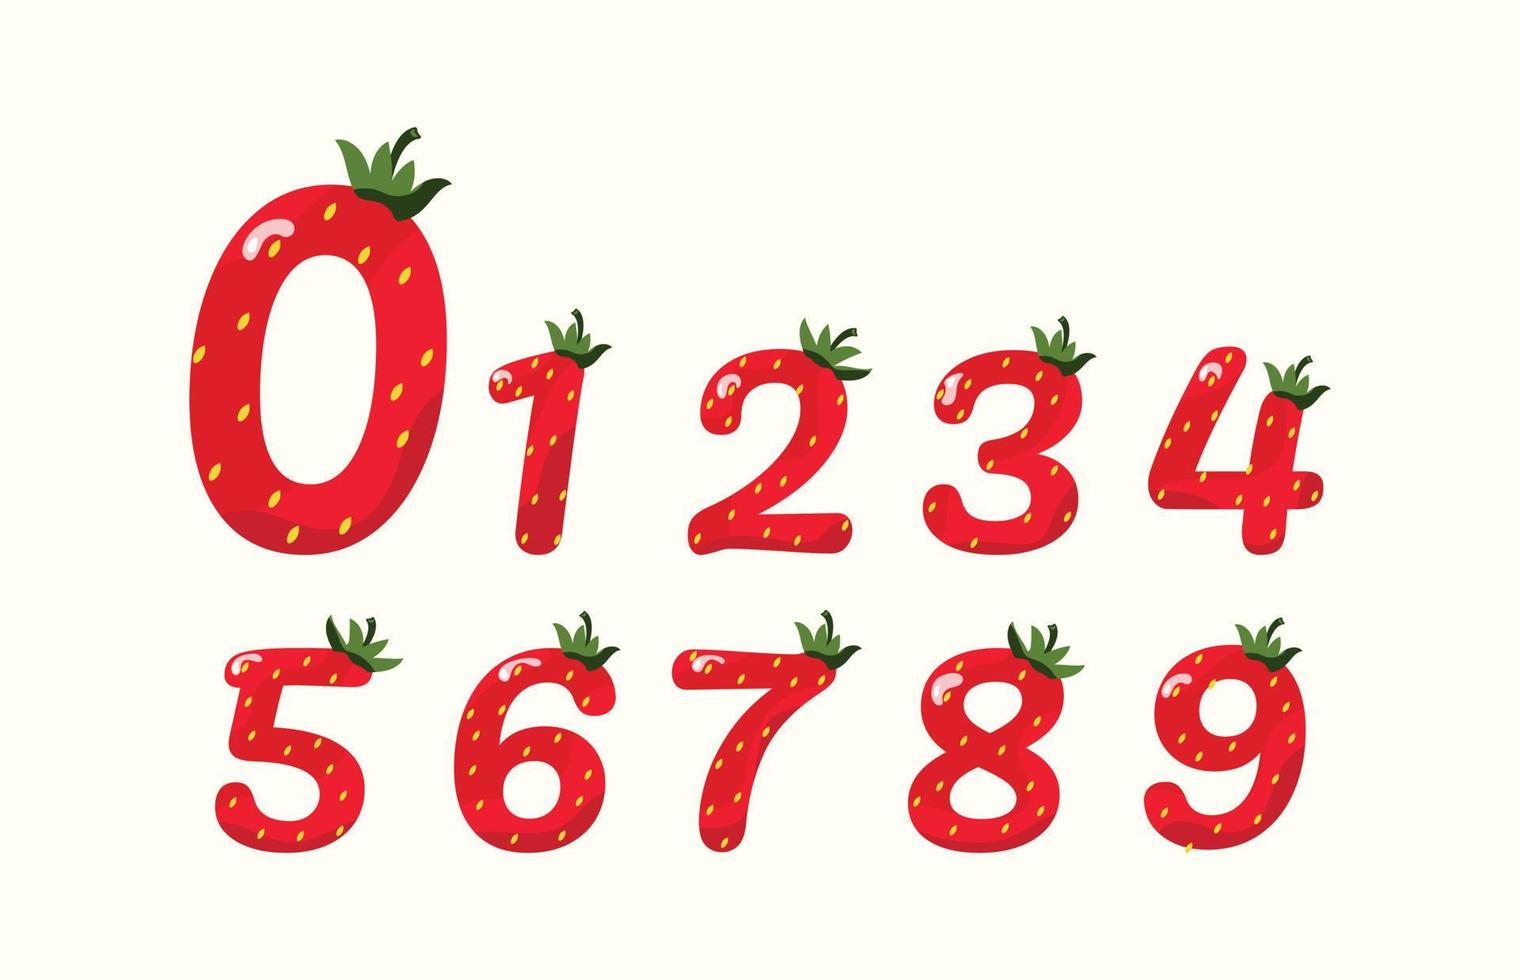 chiffre fraise. illustration vectorielle de nombres dans un motif de fraise. numéro de fraise pour les mathématiques et les vacances. vecteur